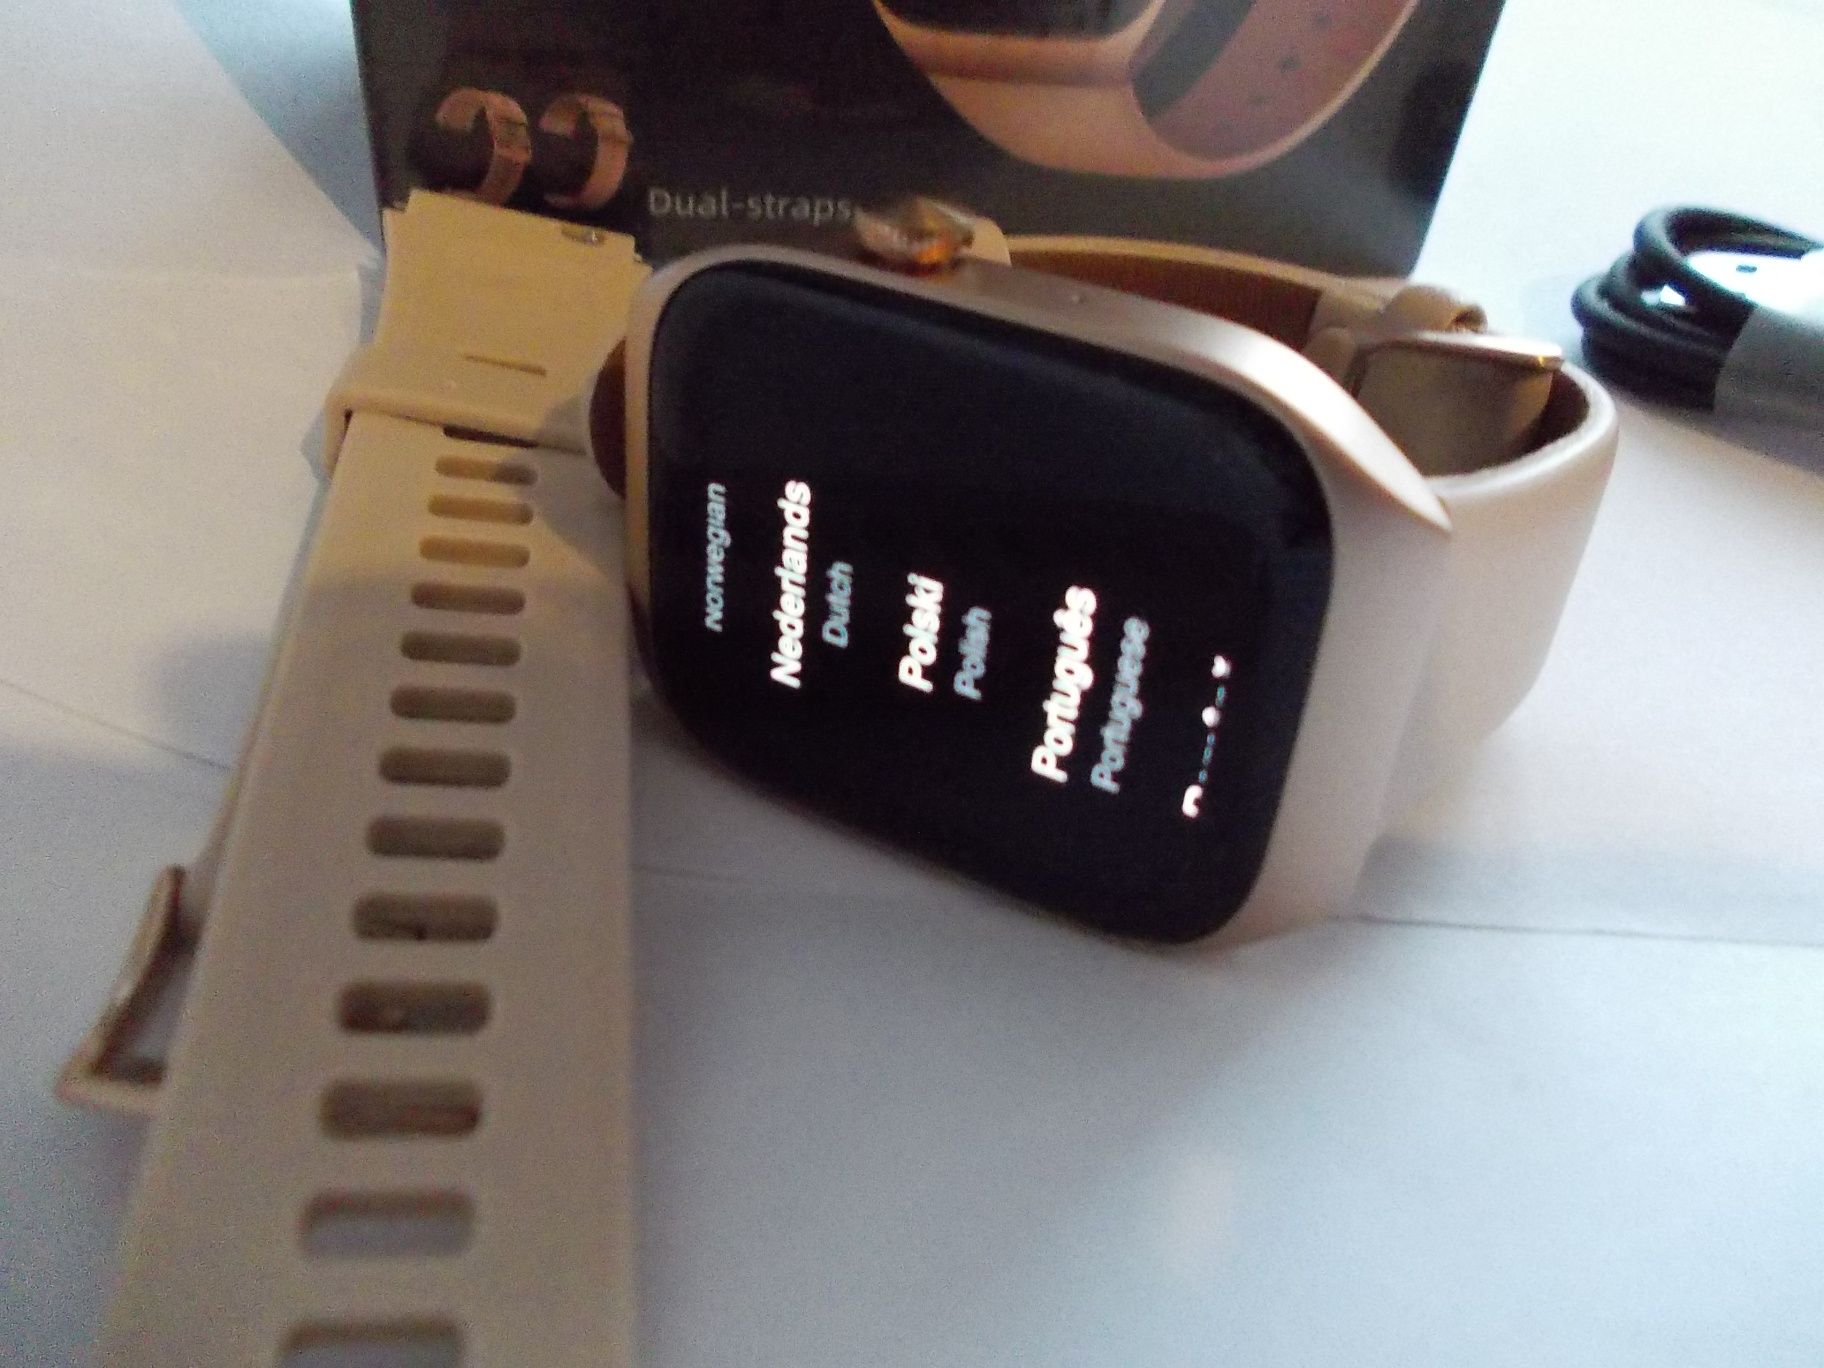 Smartwatch Mibro Watch T2 złoty GPS